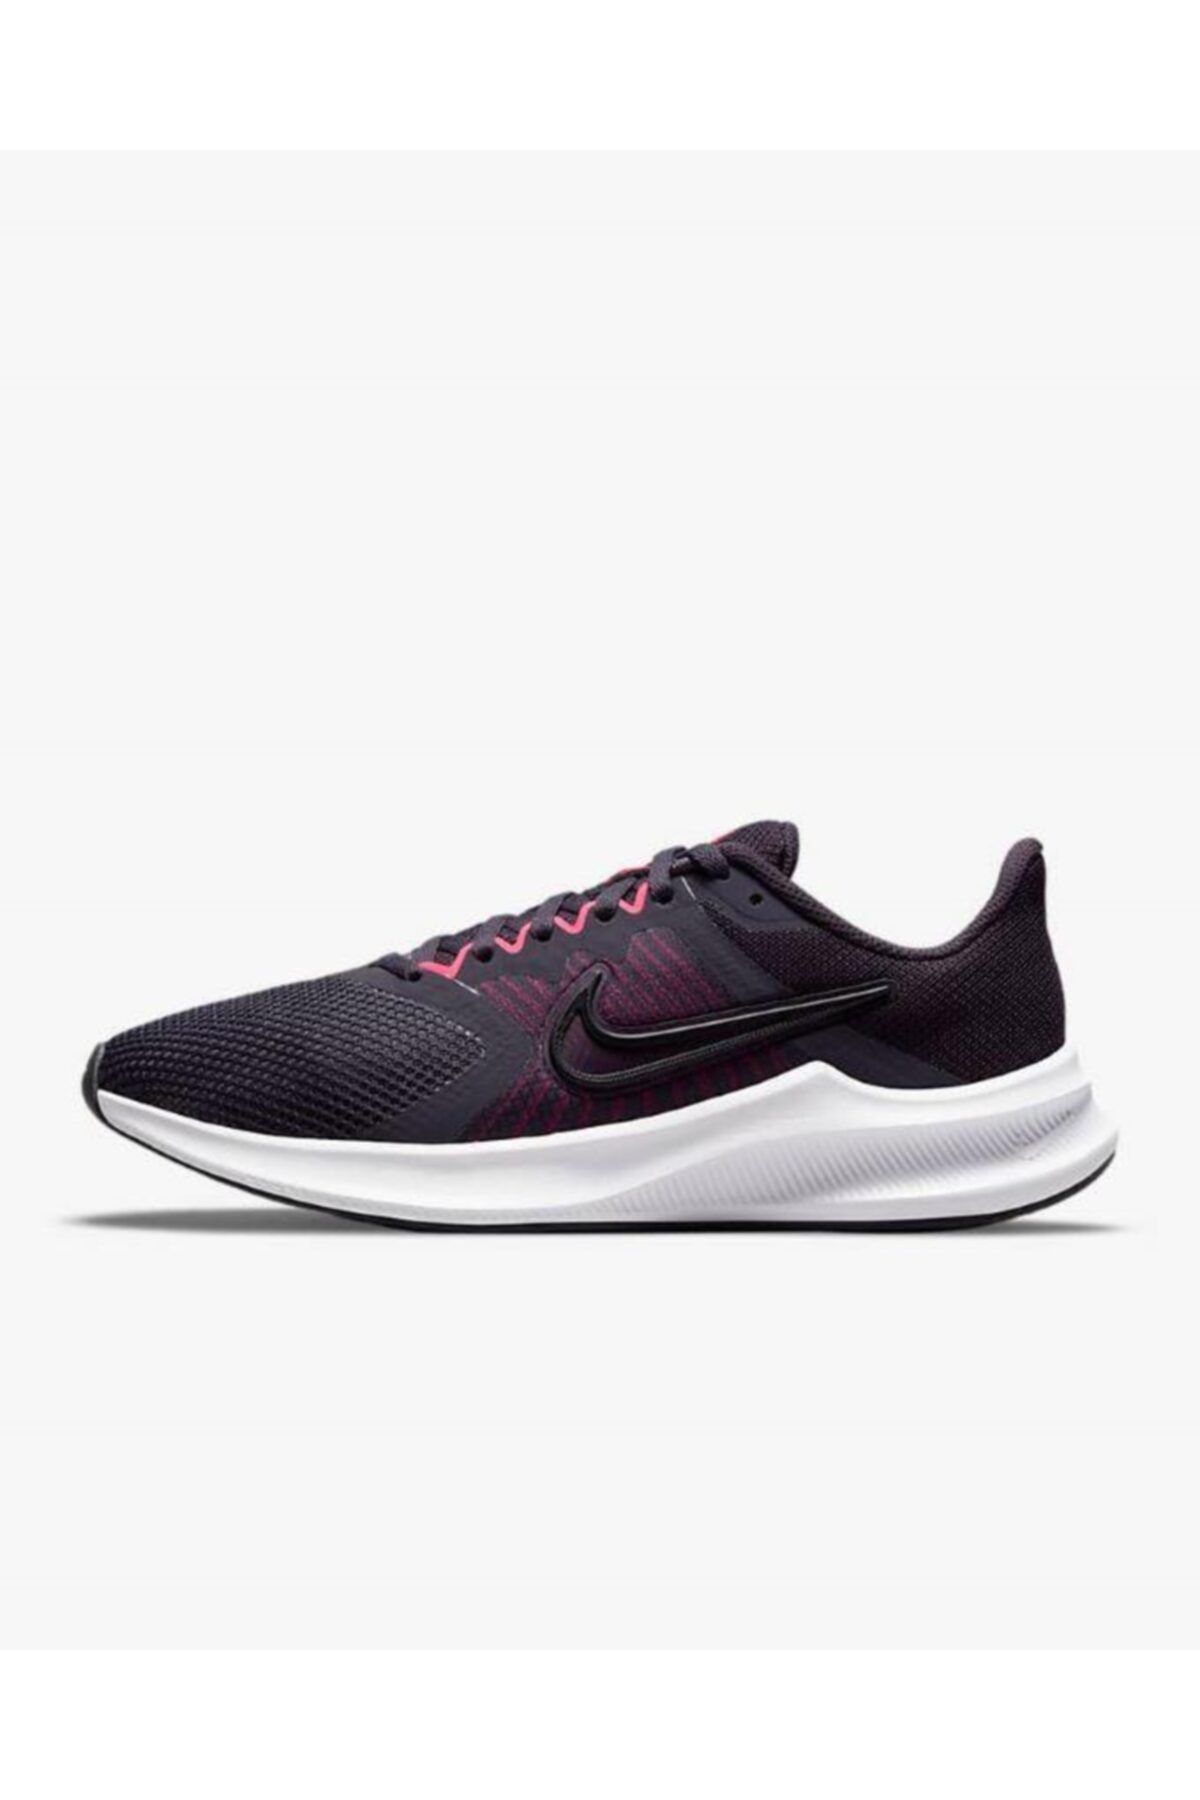 Nike Wmns Downshifter 11 Kadın Mor Koşu Ayakkabısı Cw3413-501